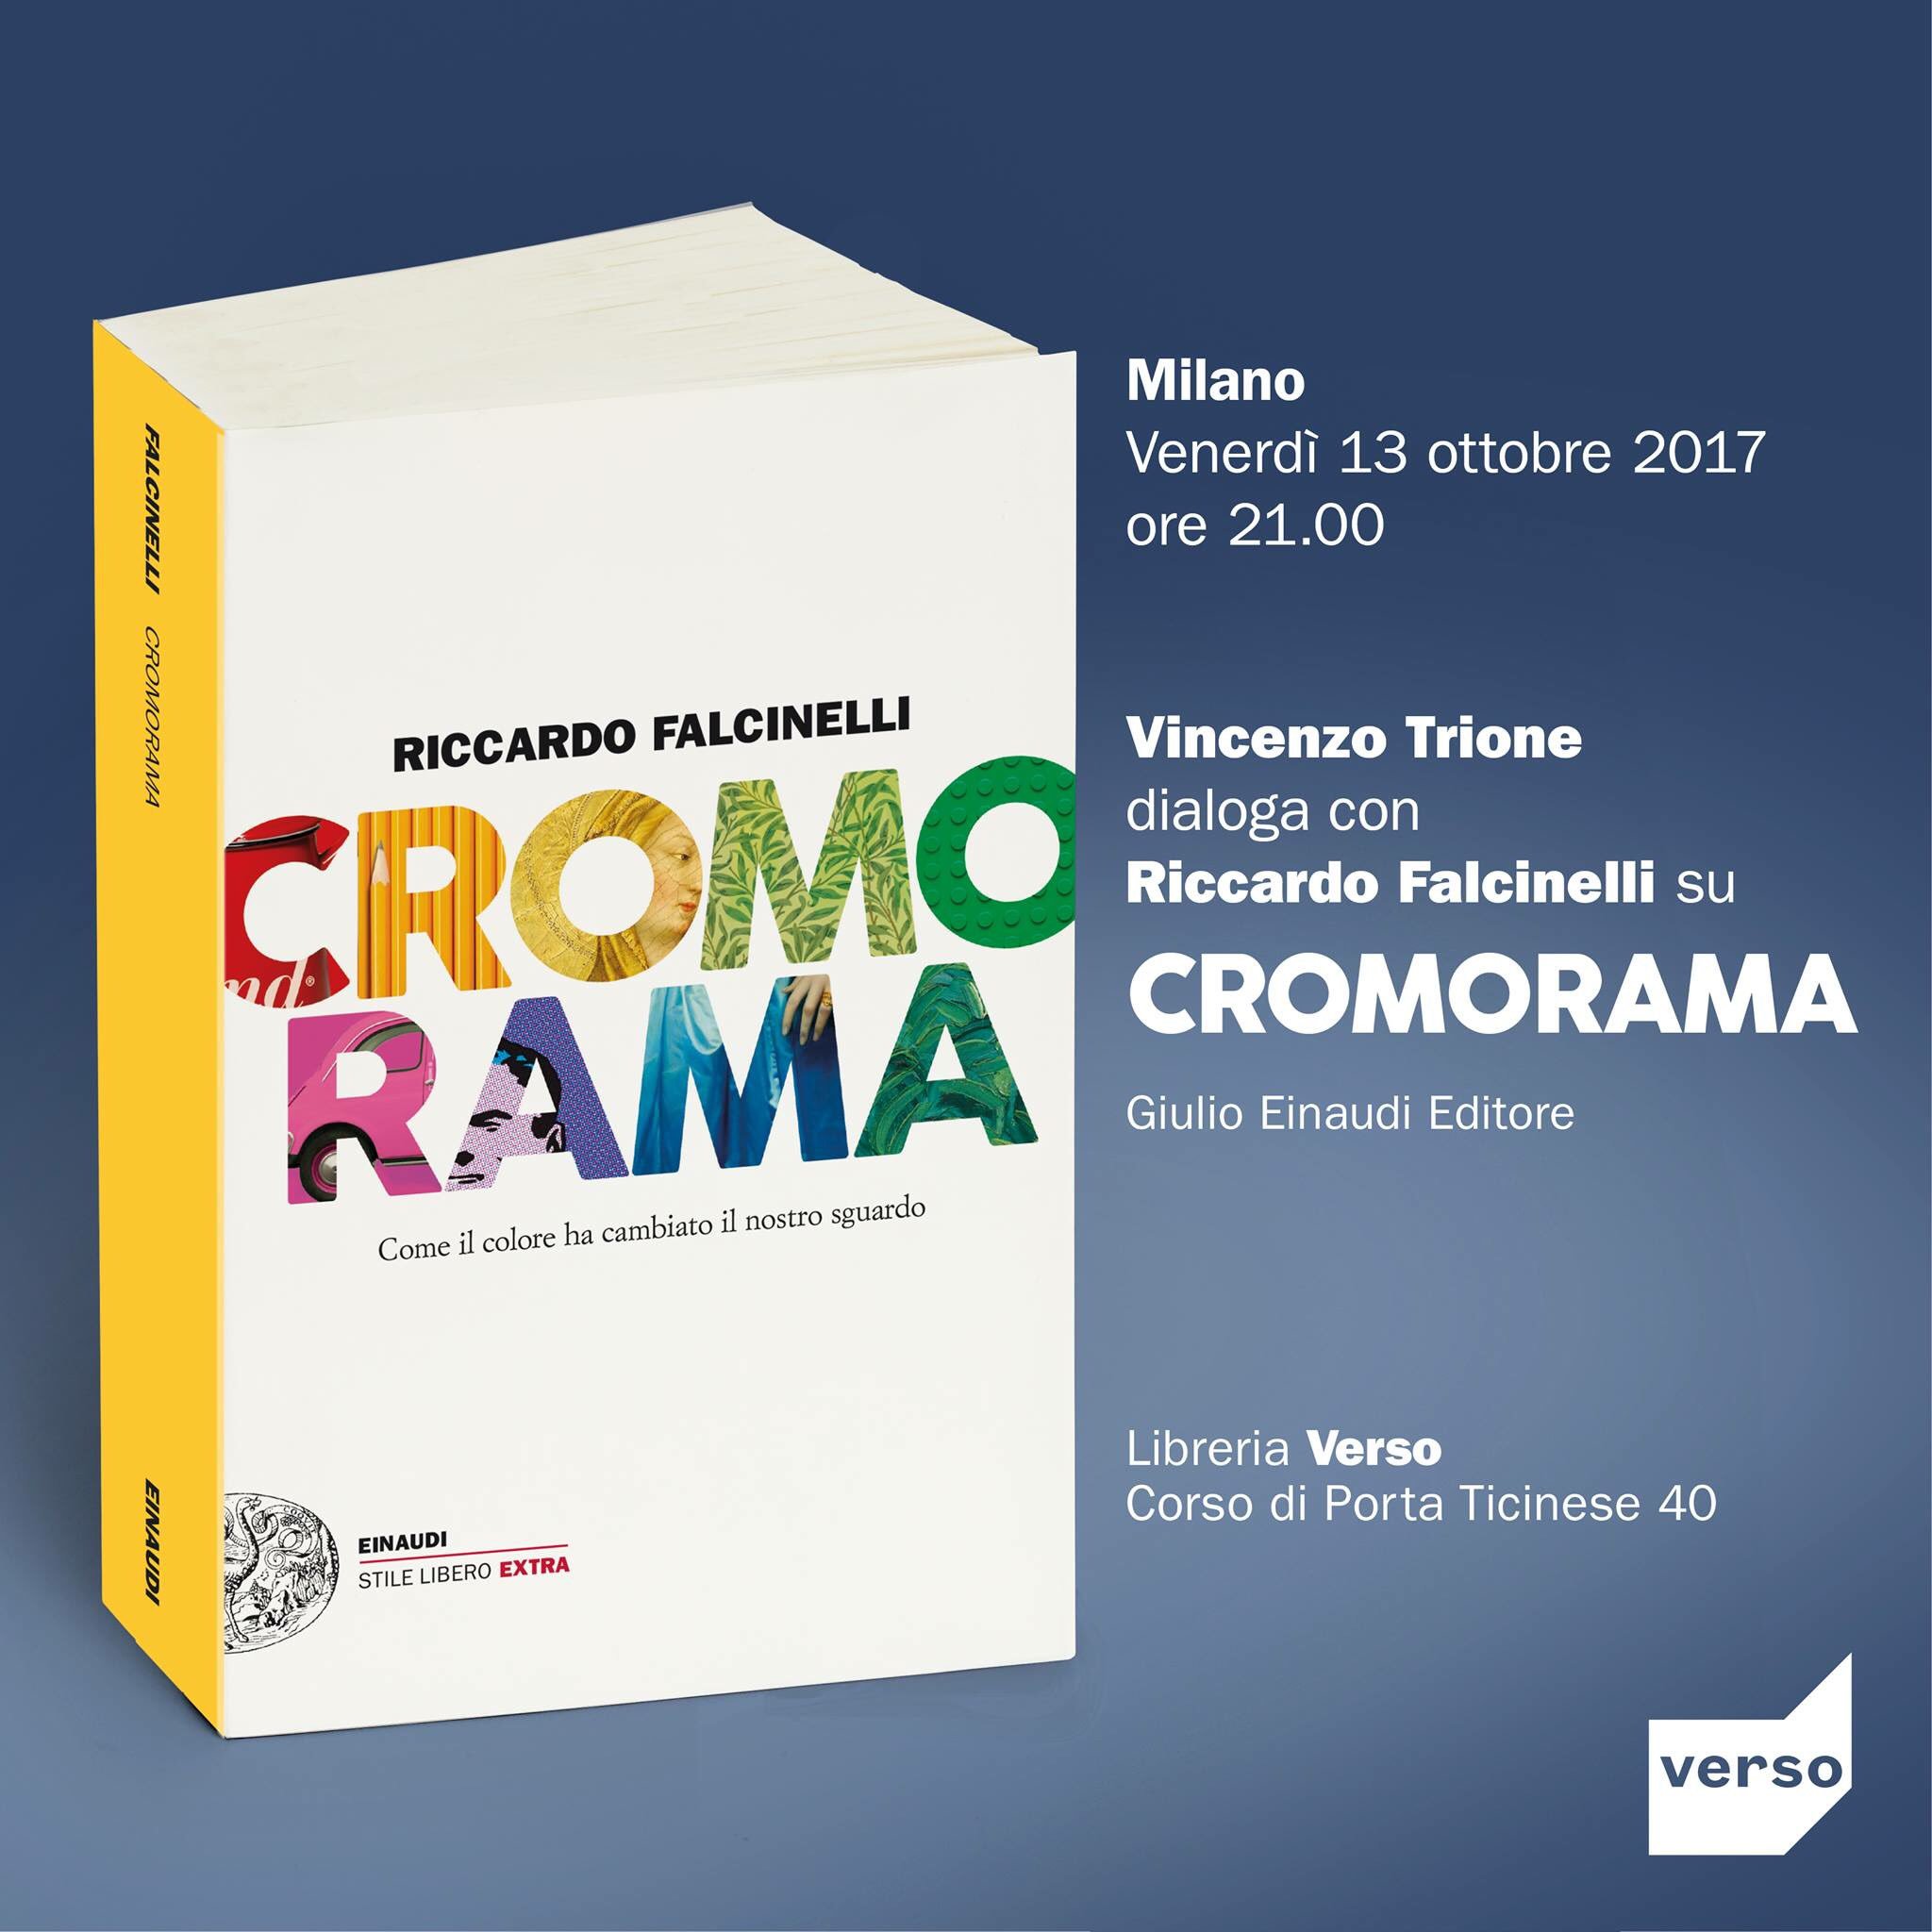 verso libri on X: Riccardo Falcinelli presenta #Cromorama, con  @vincenzo_trione, @Einaudieditore. Stasera alle 21, @versolibri!    / X